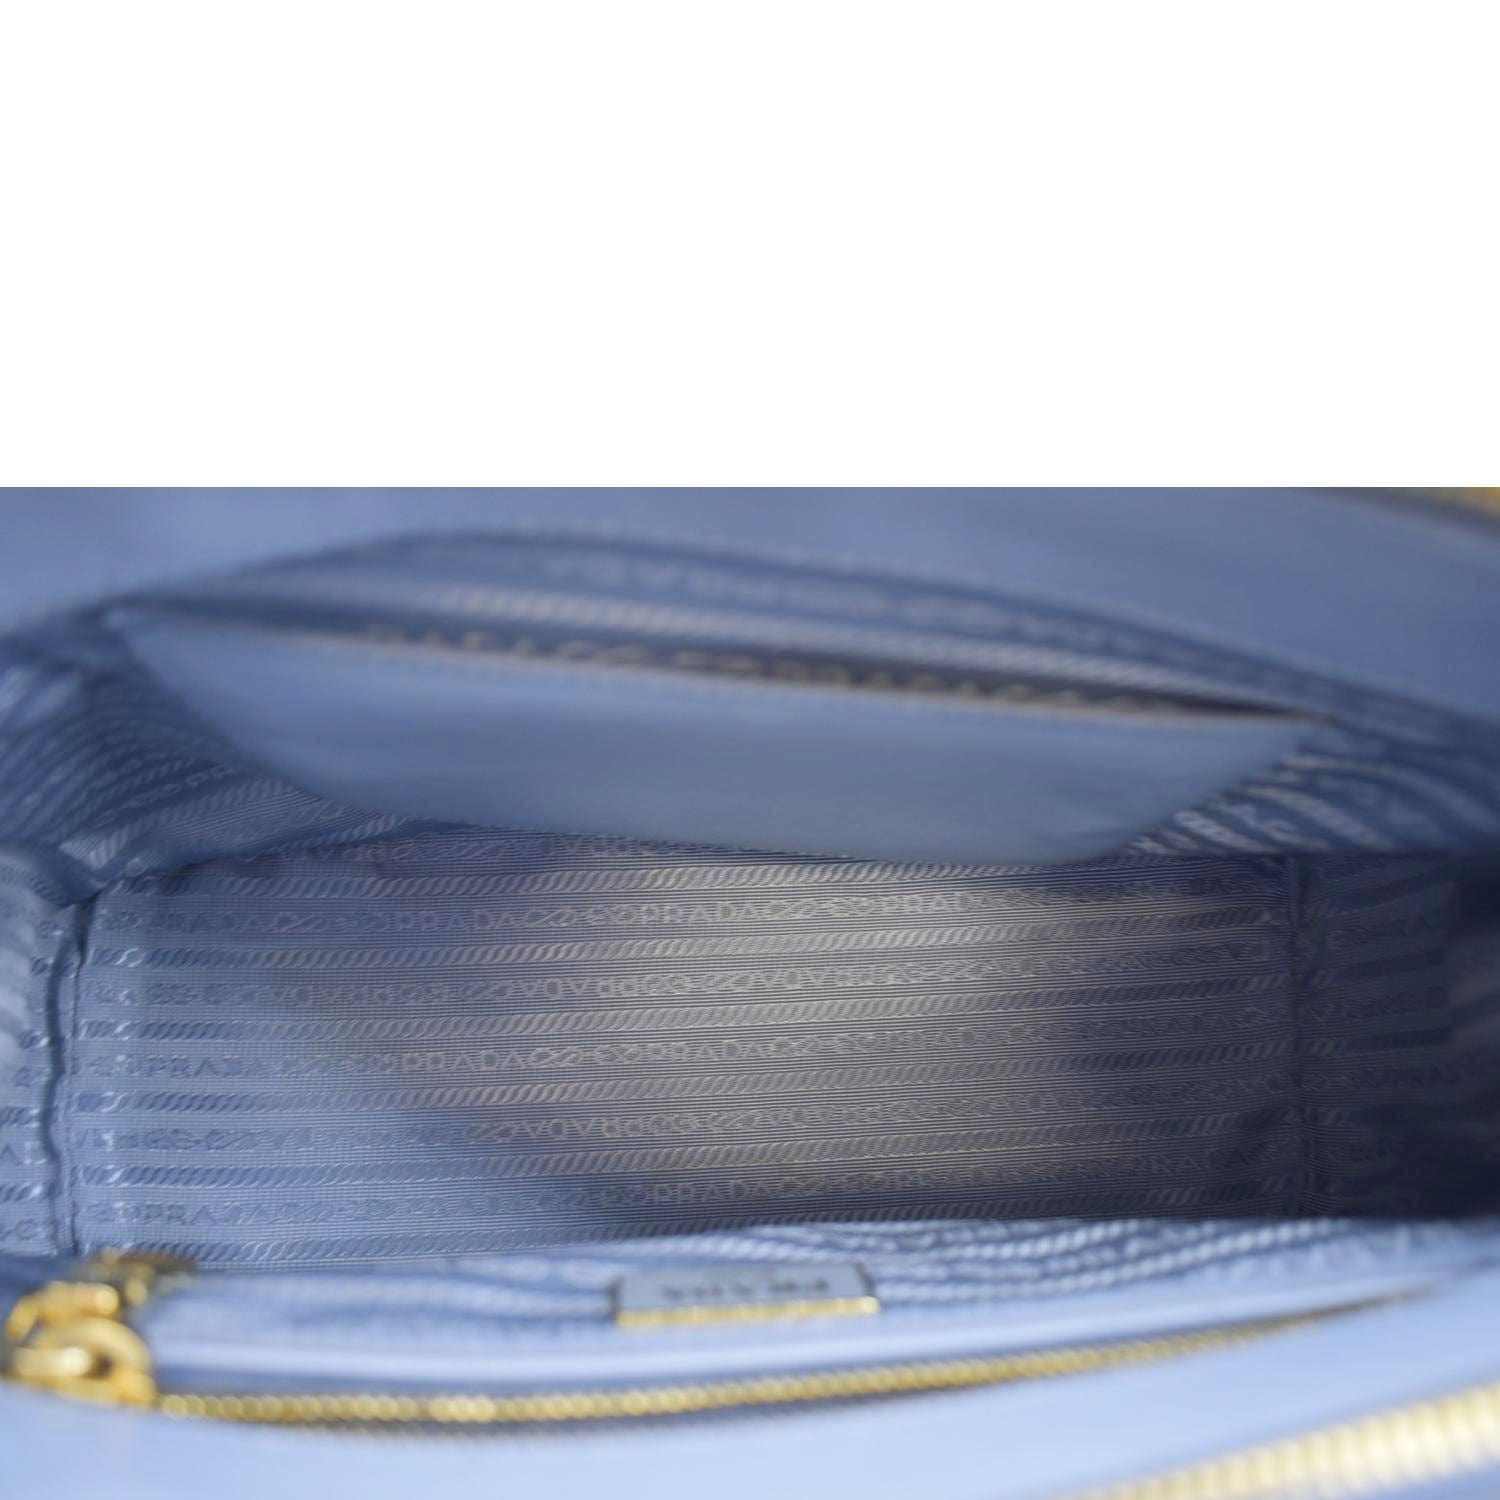 Prada Galleria Double-Zip Small Saffiano Leather Tote Bag